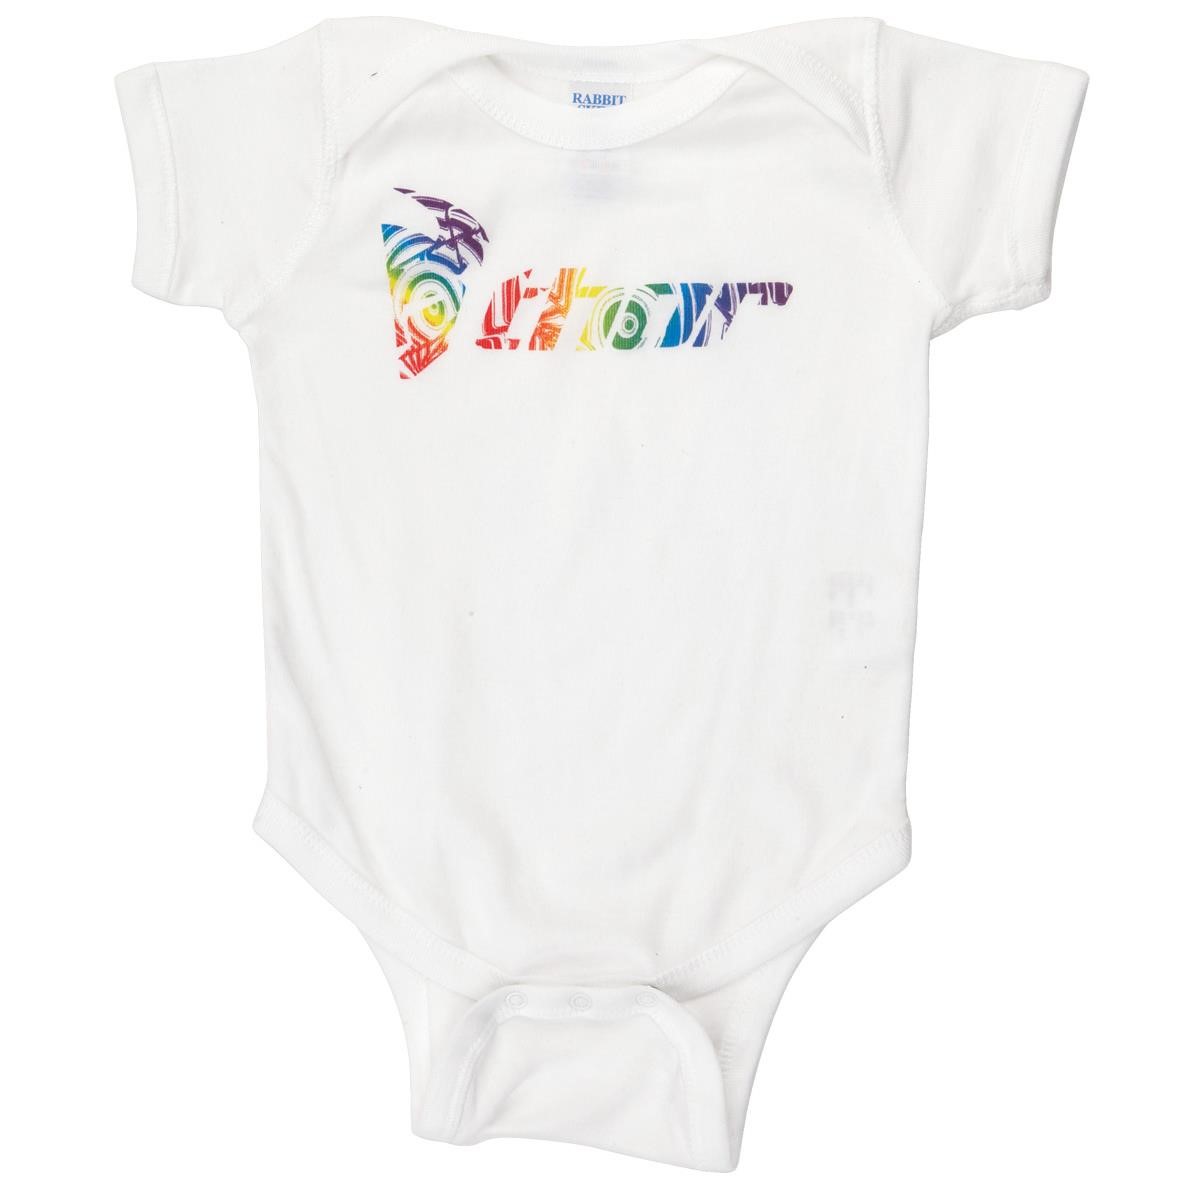 Freizeit/Streetwear Bekleidung-Unterwäsche/Schlafkleidung - Thor Baby Body Onsies Ripple White